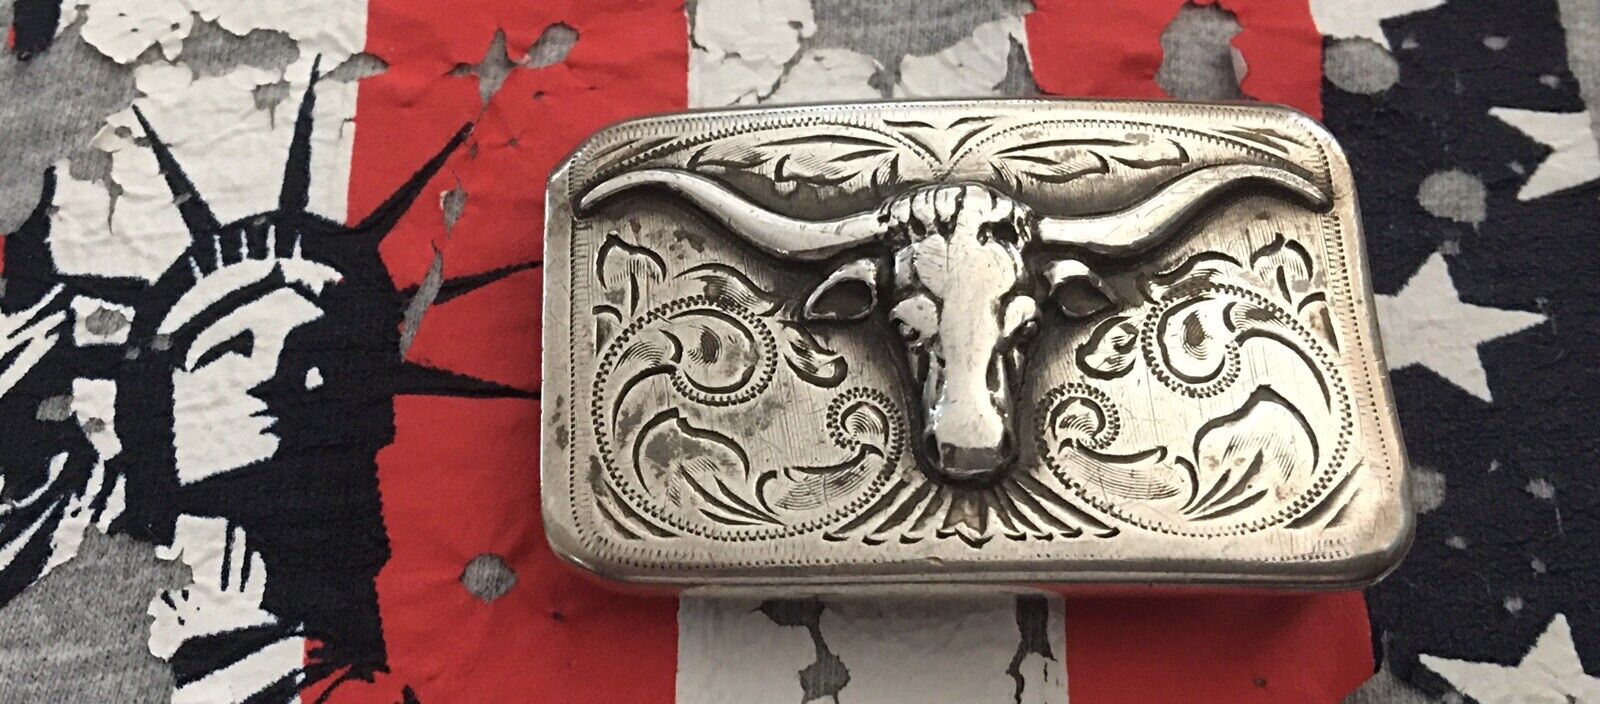 Super Rare Results Brand USA Vintage Sterling Silver Longhorn Steer Belt Buckle